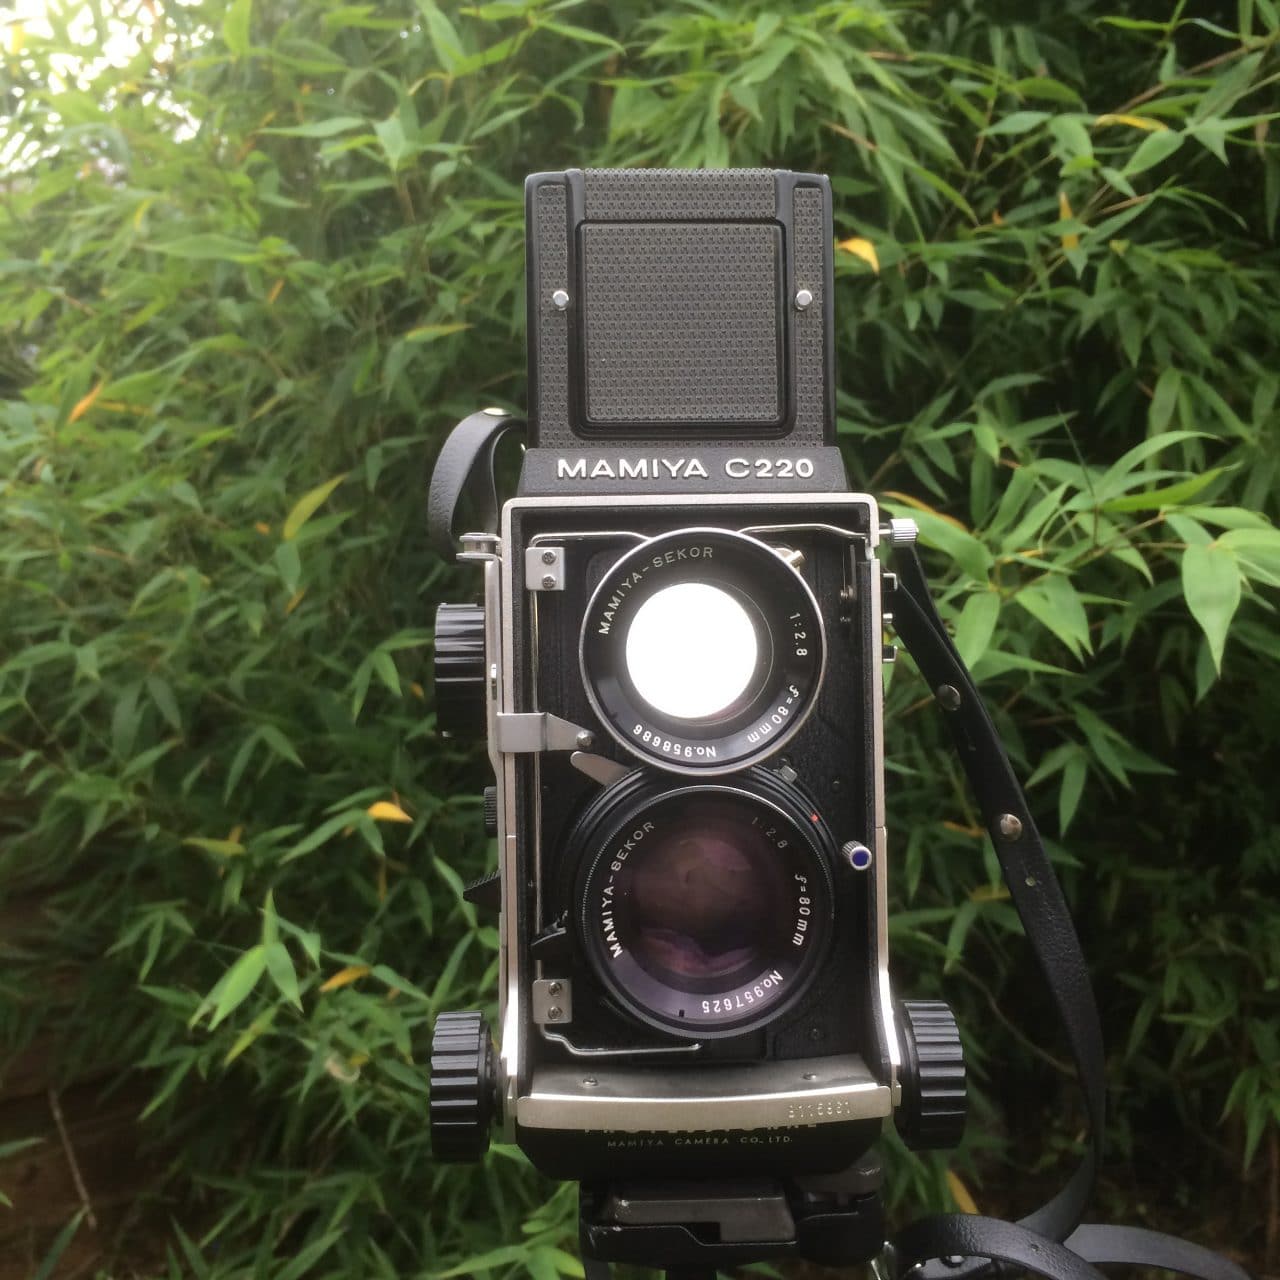 Camera review: Mamiya C220 Professional TLR